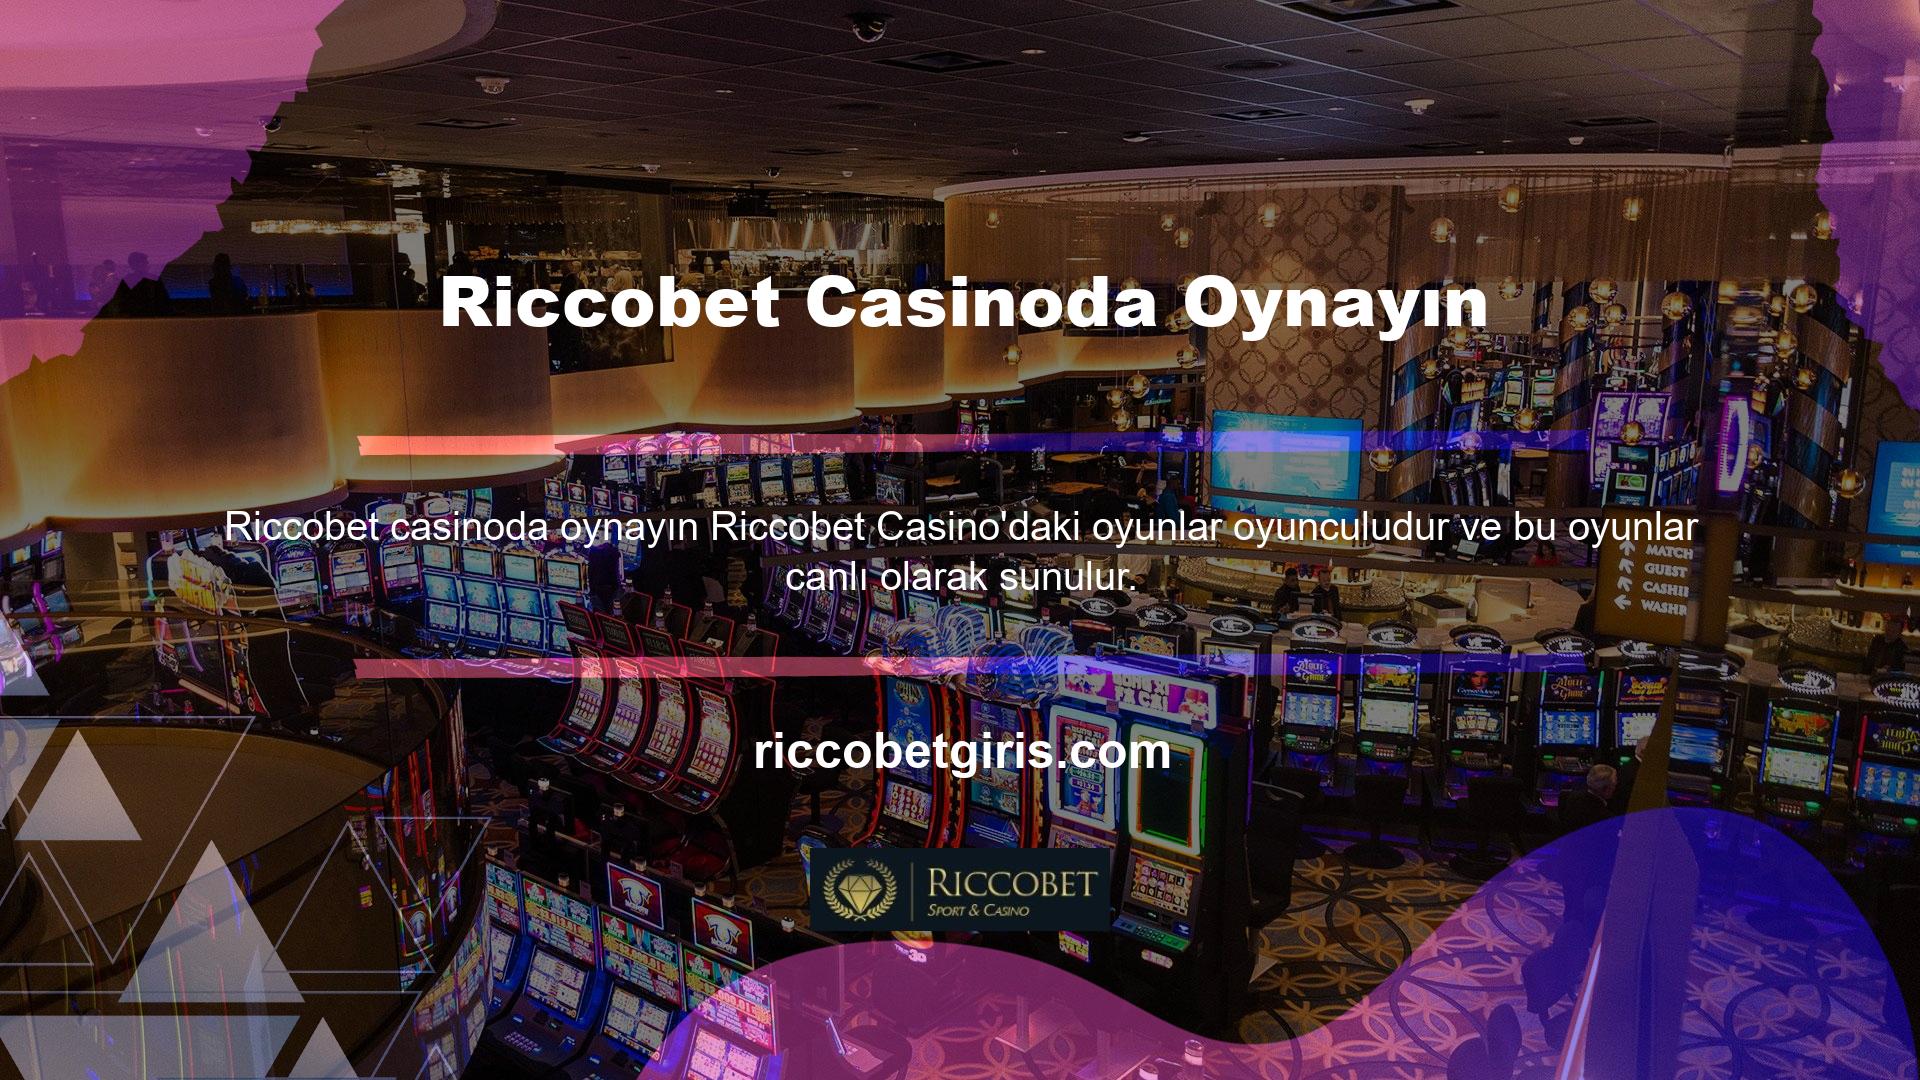 Riccobet canlı casino oyunları, oyun otoriteleri ile Riccobet Casinoda Oynayın geçmenizi ve onlardan en iyi şekilde yararlanmanızı sağlar